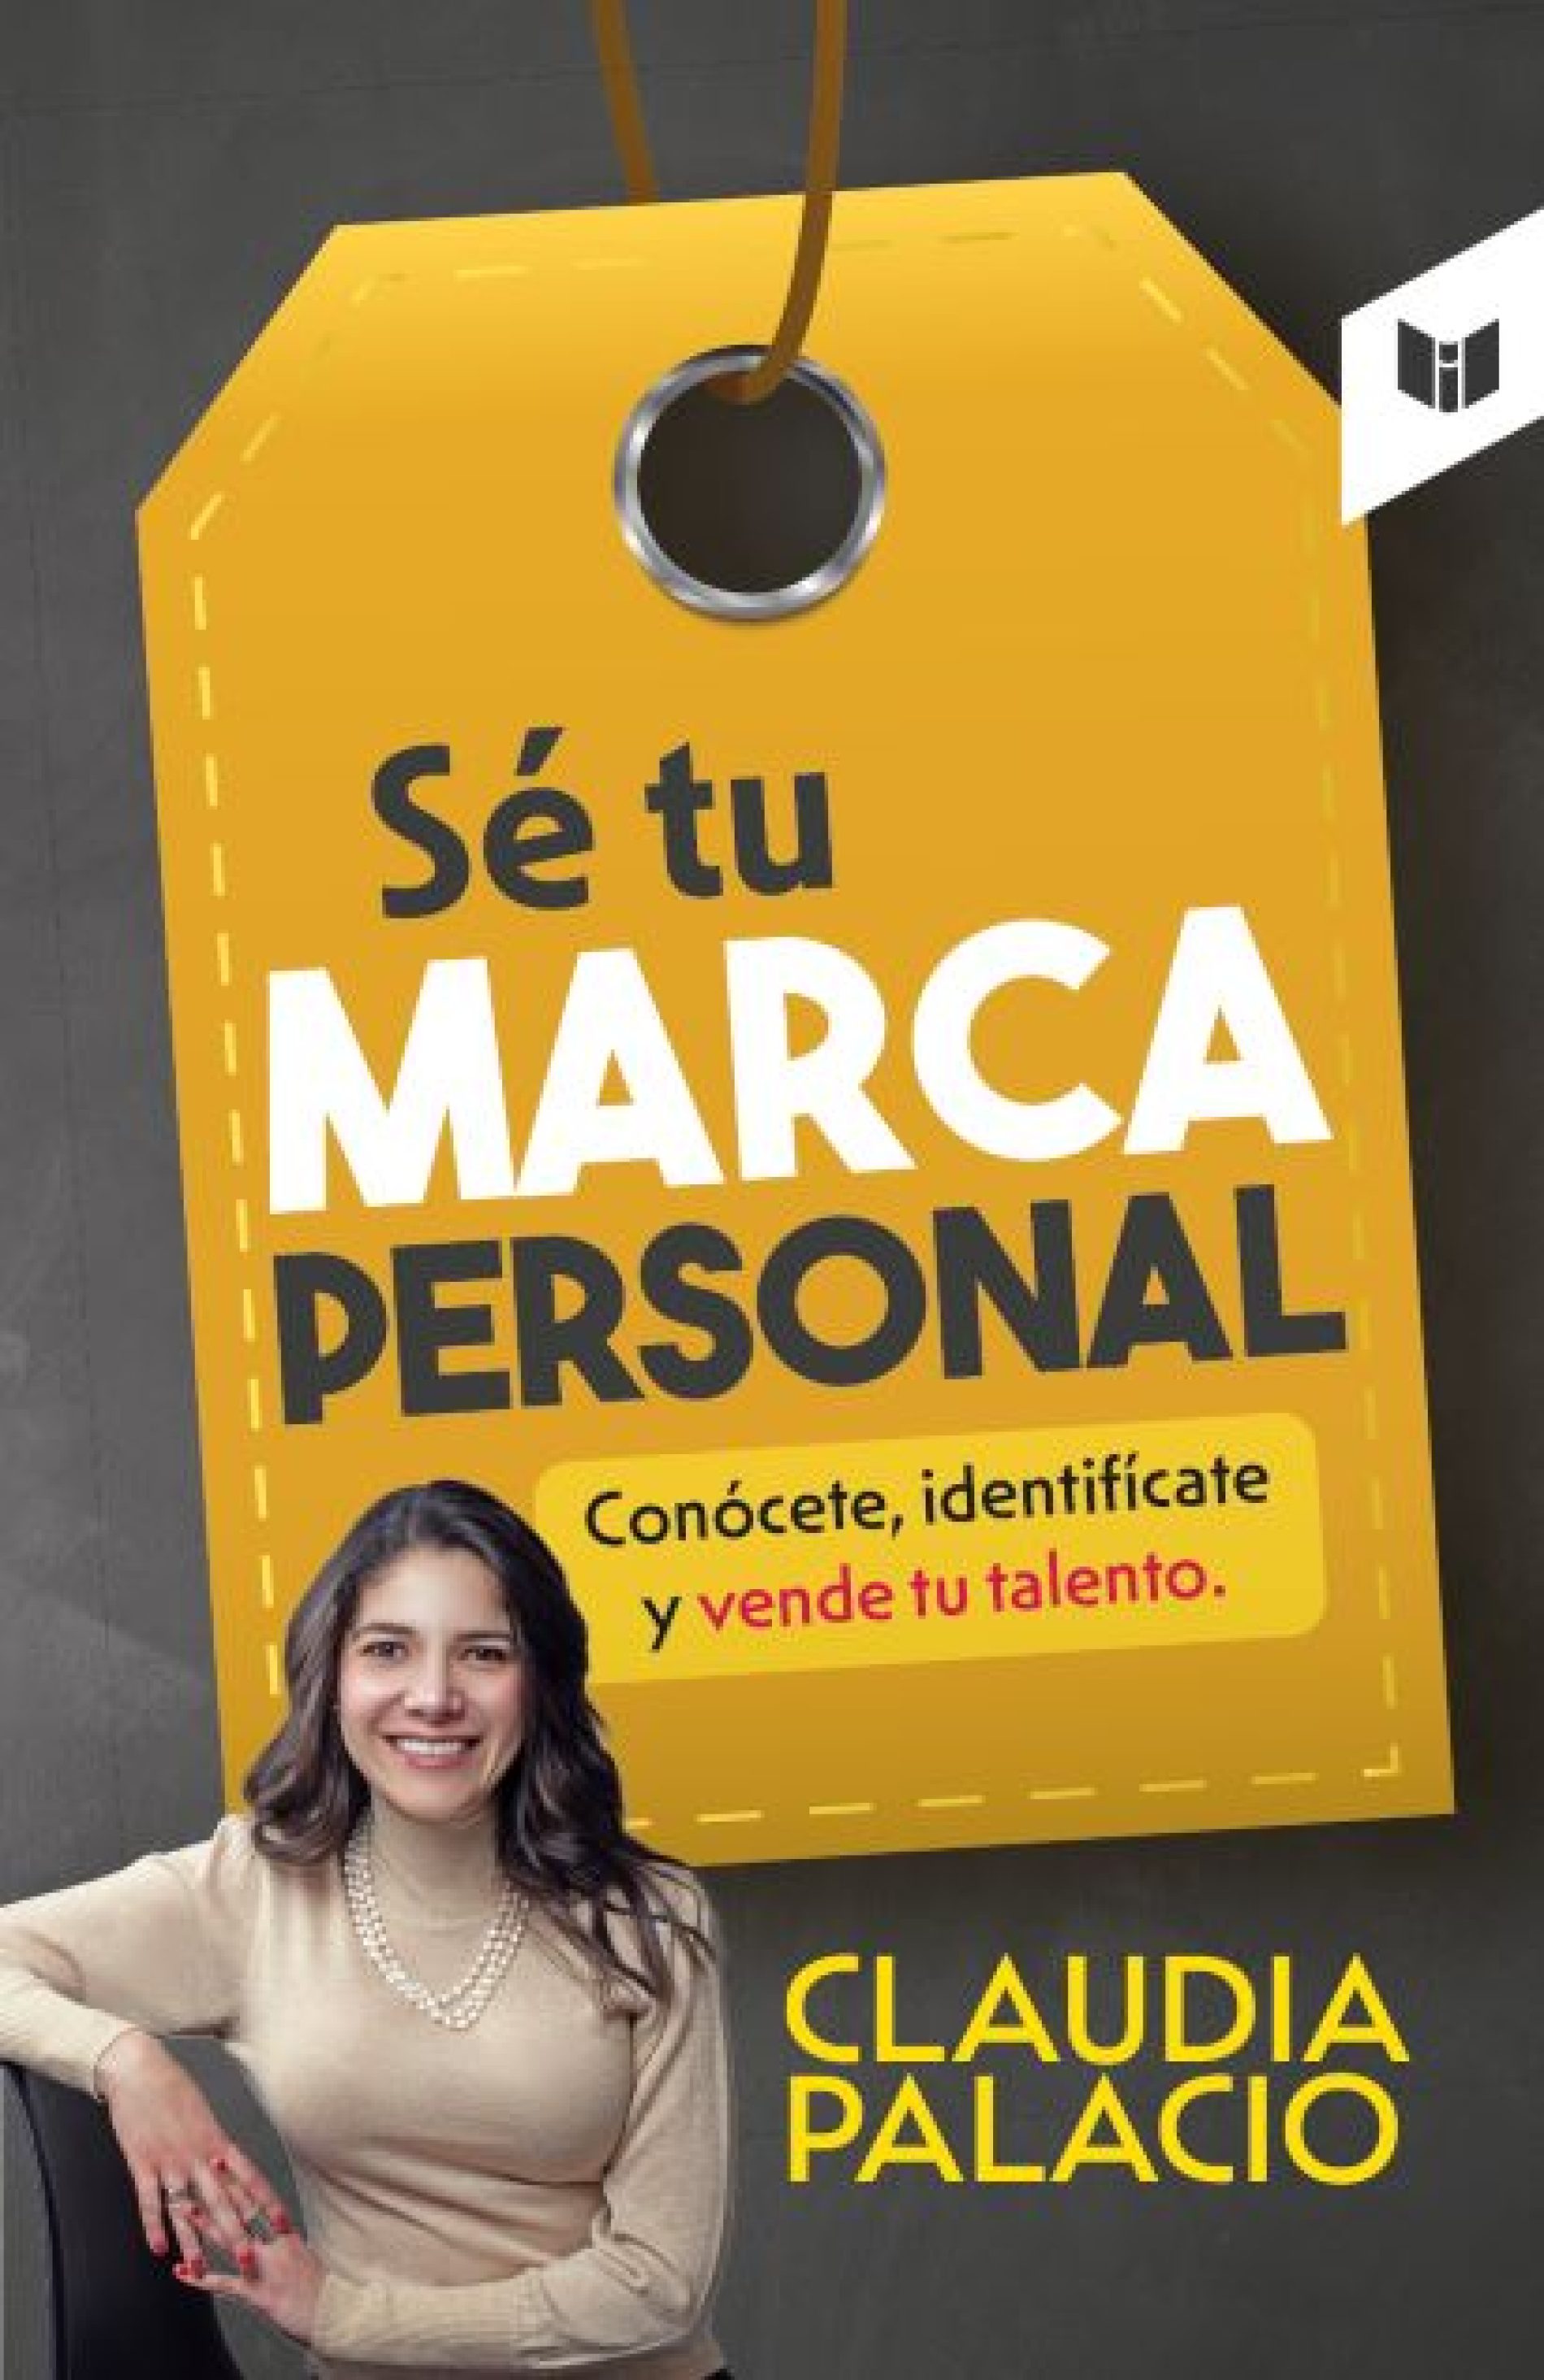 Libro de Claudia Palacio: “Sé tu marca personal”